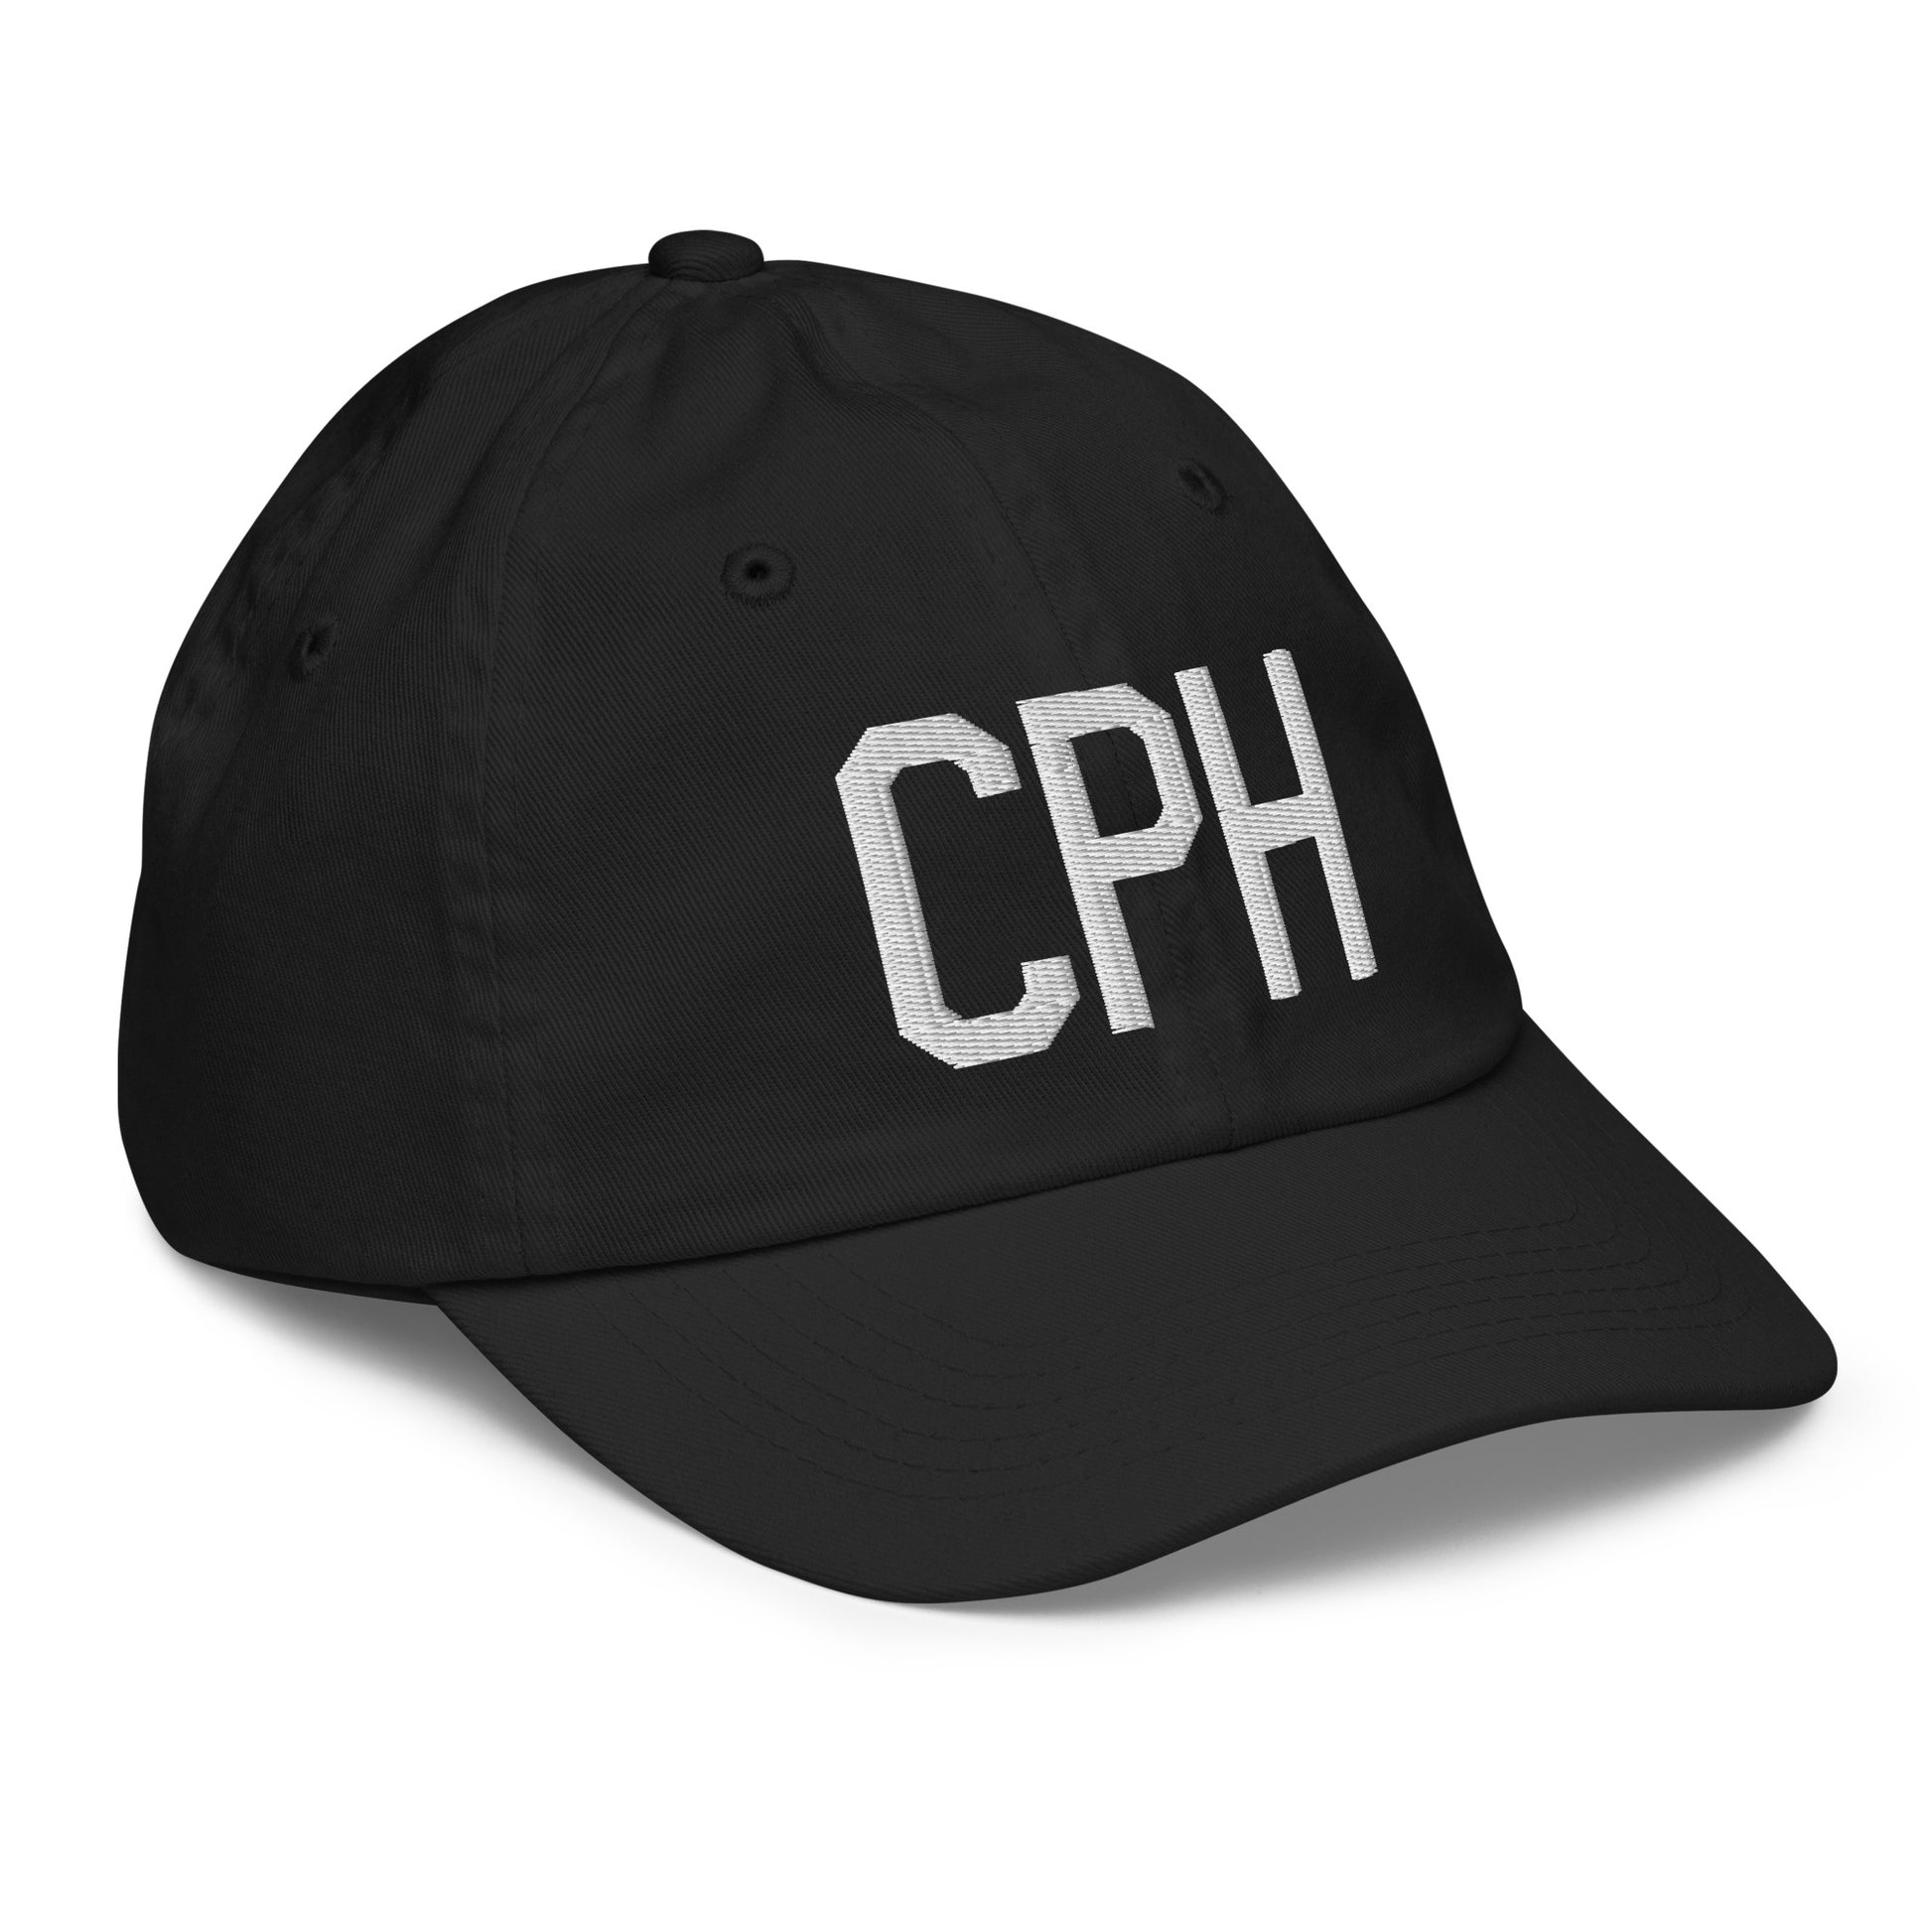 Airport Code Kid's Baseball Cap - White • CPH Copenhagen • YHM Designs - Image 12